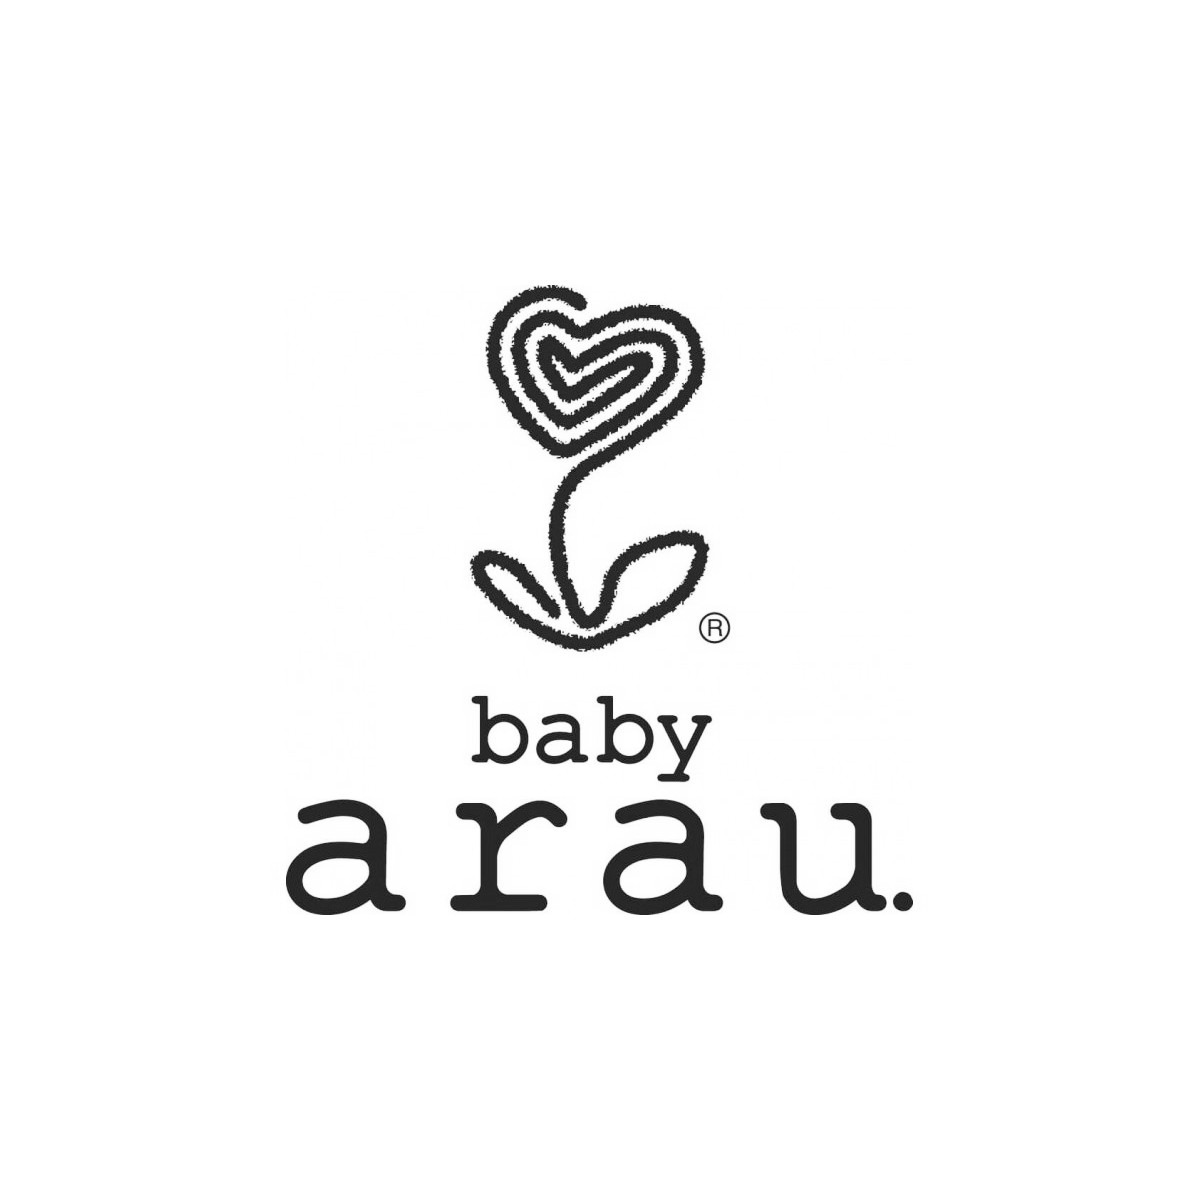 Arau Baby